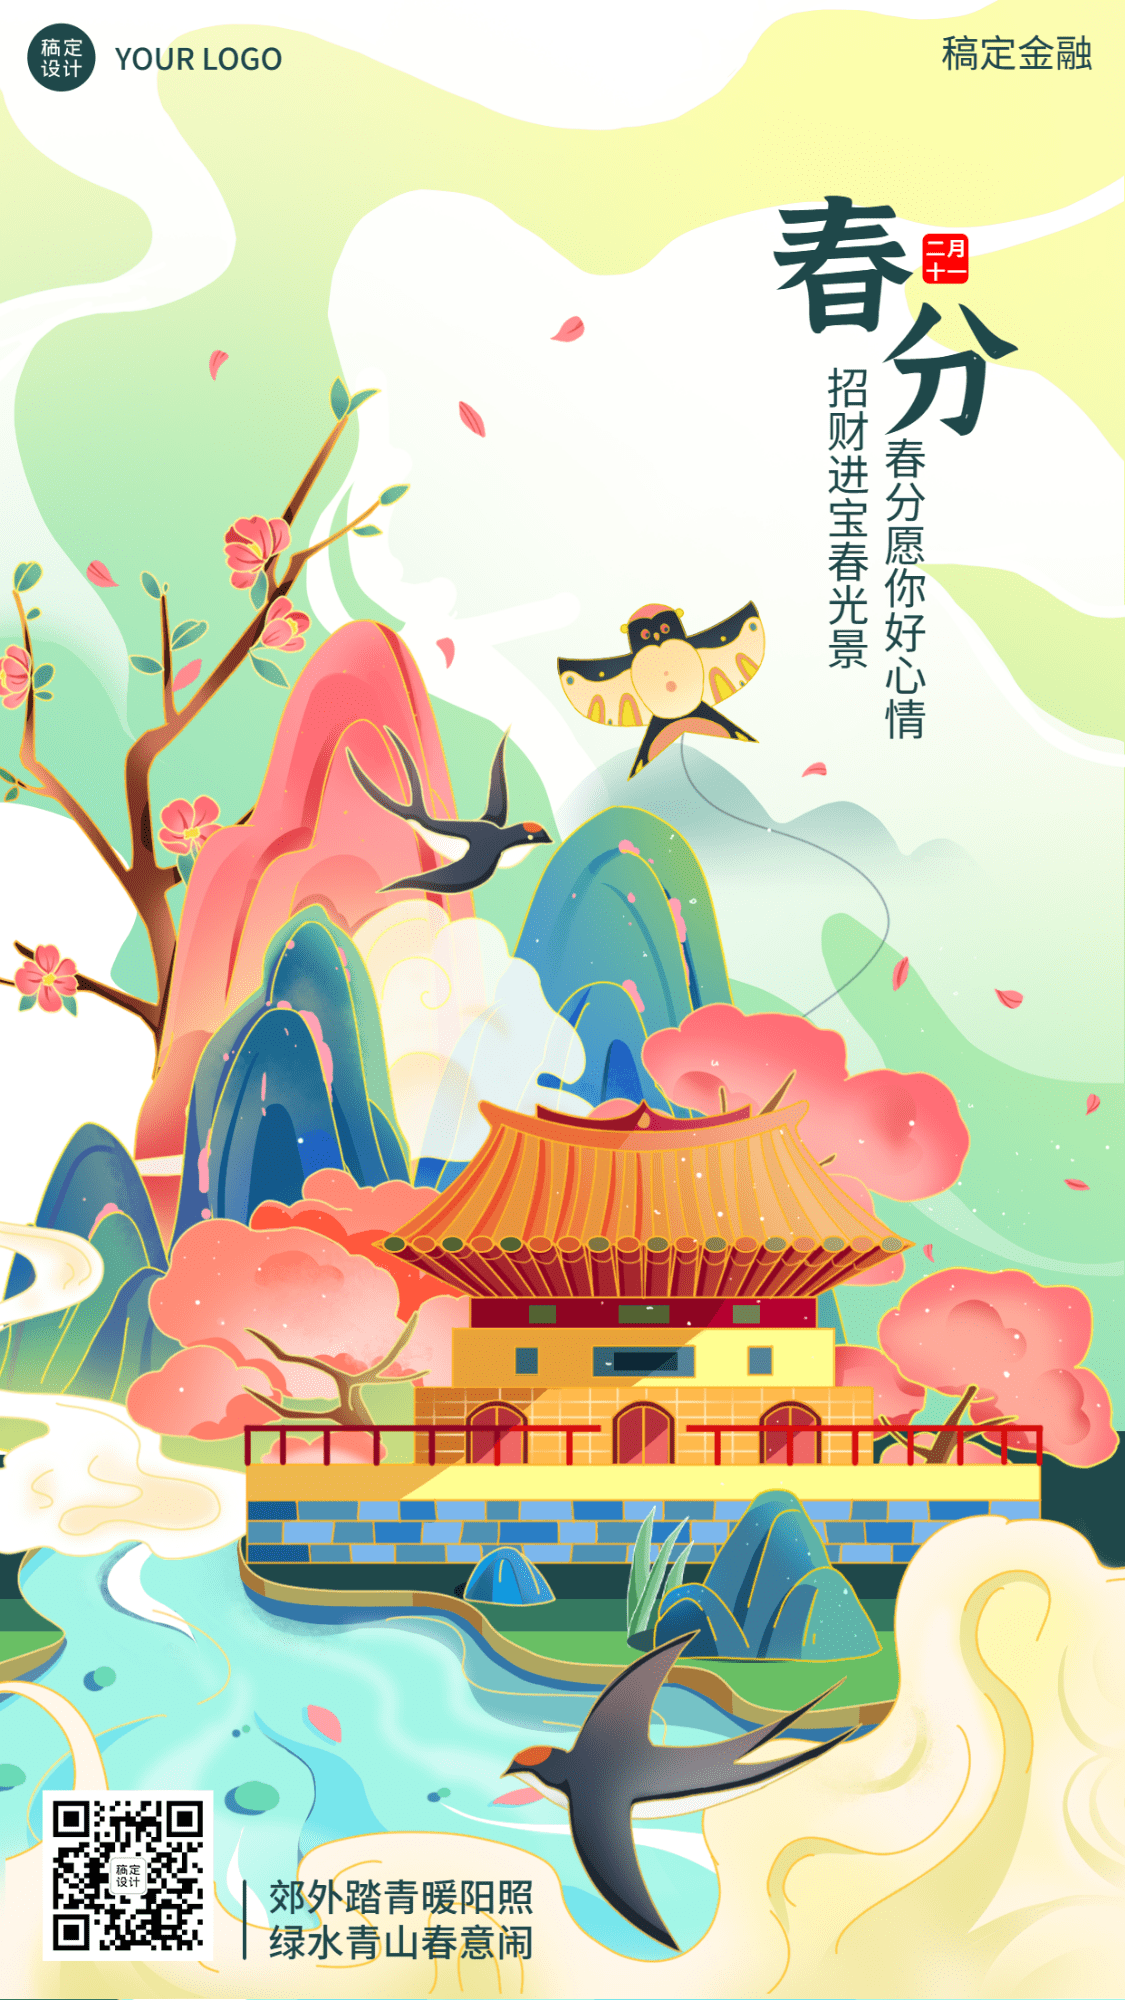 春分金融保险节气祝福中国风插画海报